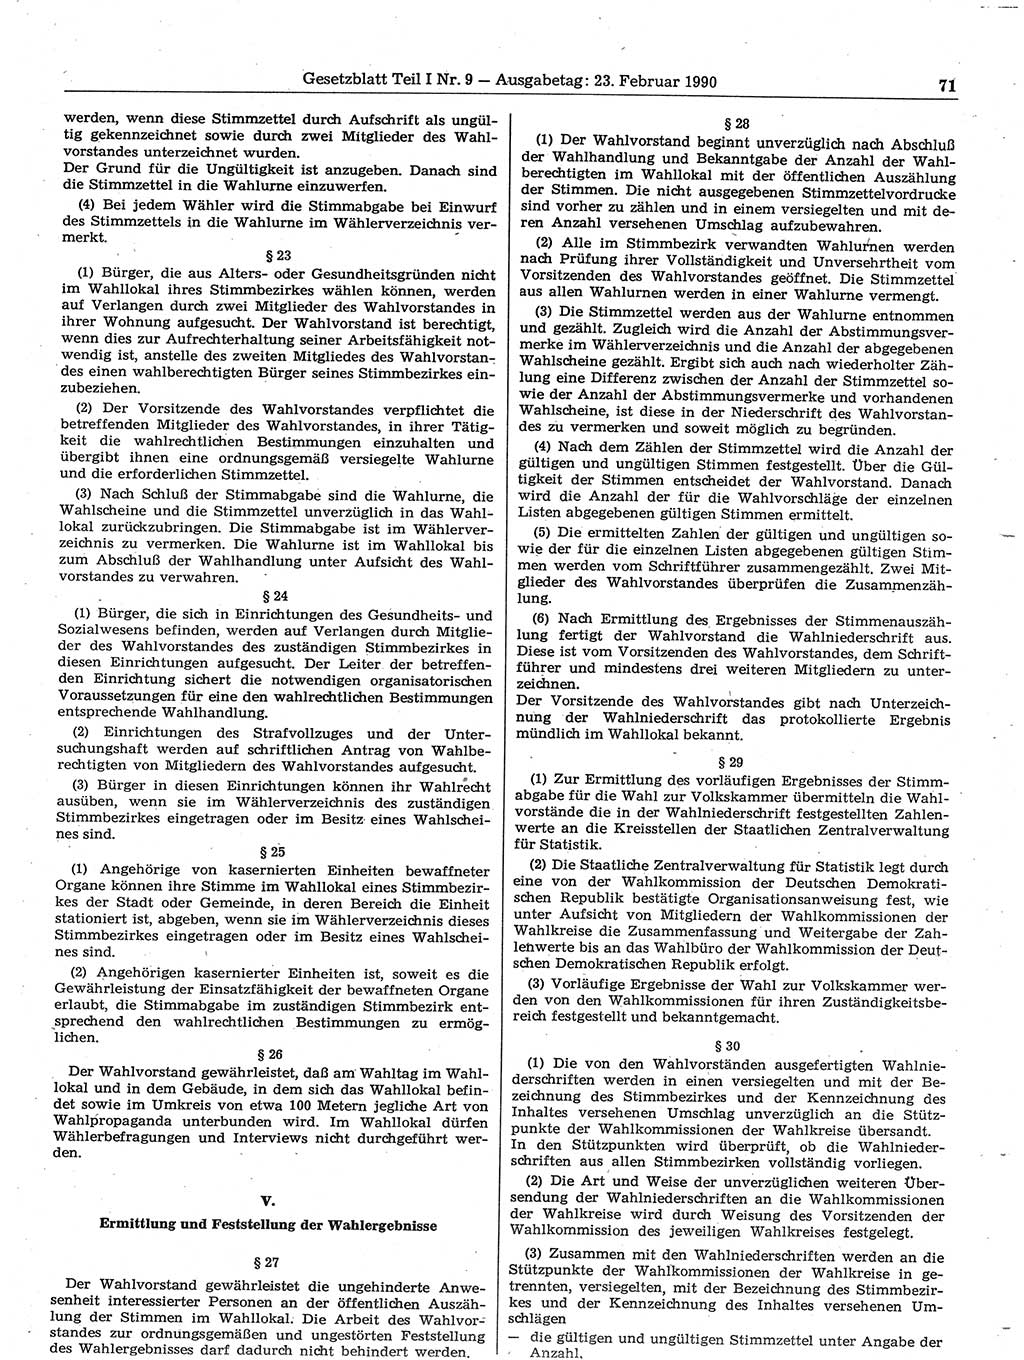 Gesetzblatt (GBl.) der Deutschen Demokratischen Republik (DDR) Teil Ⅰ 1990, Seite 71 (GBl. DDR Ⅰ 1990, S. 71)